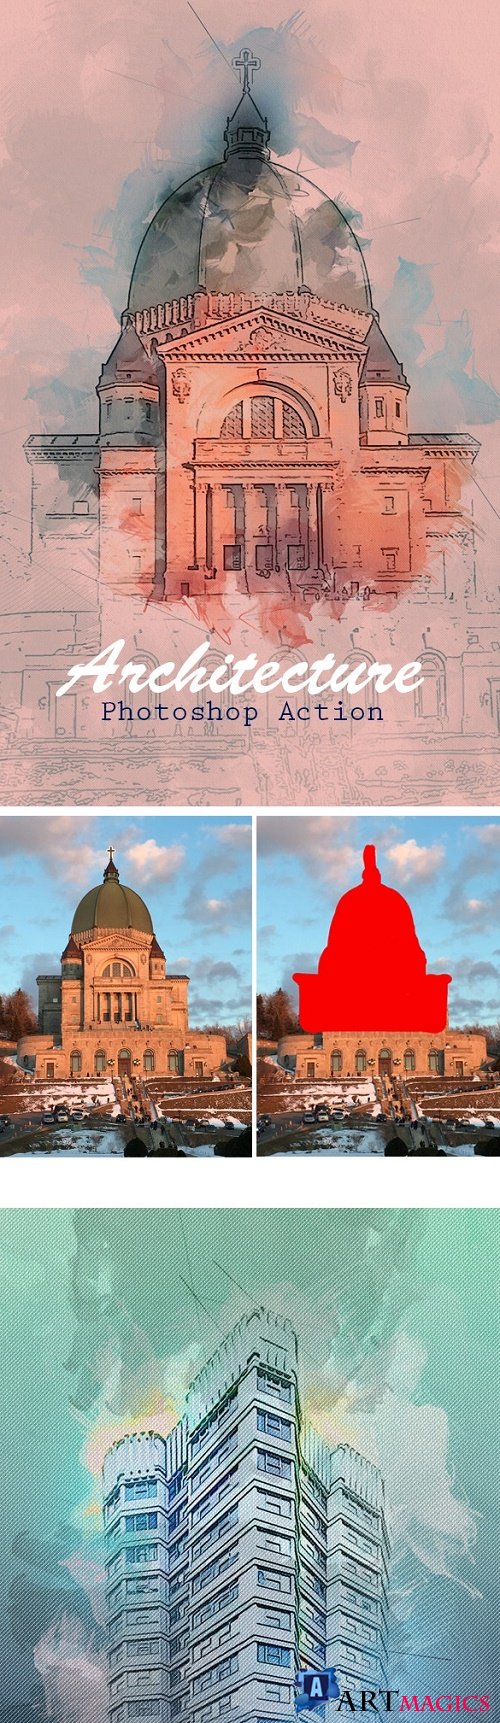 Architecture Photoshop Action 23667924